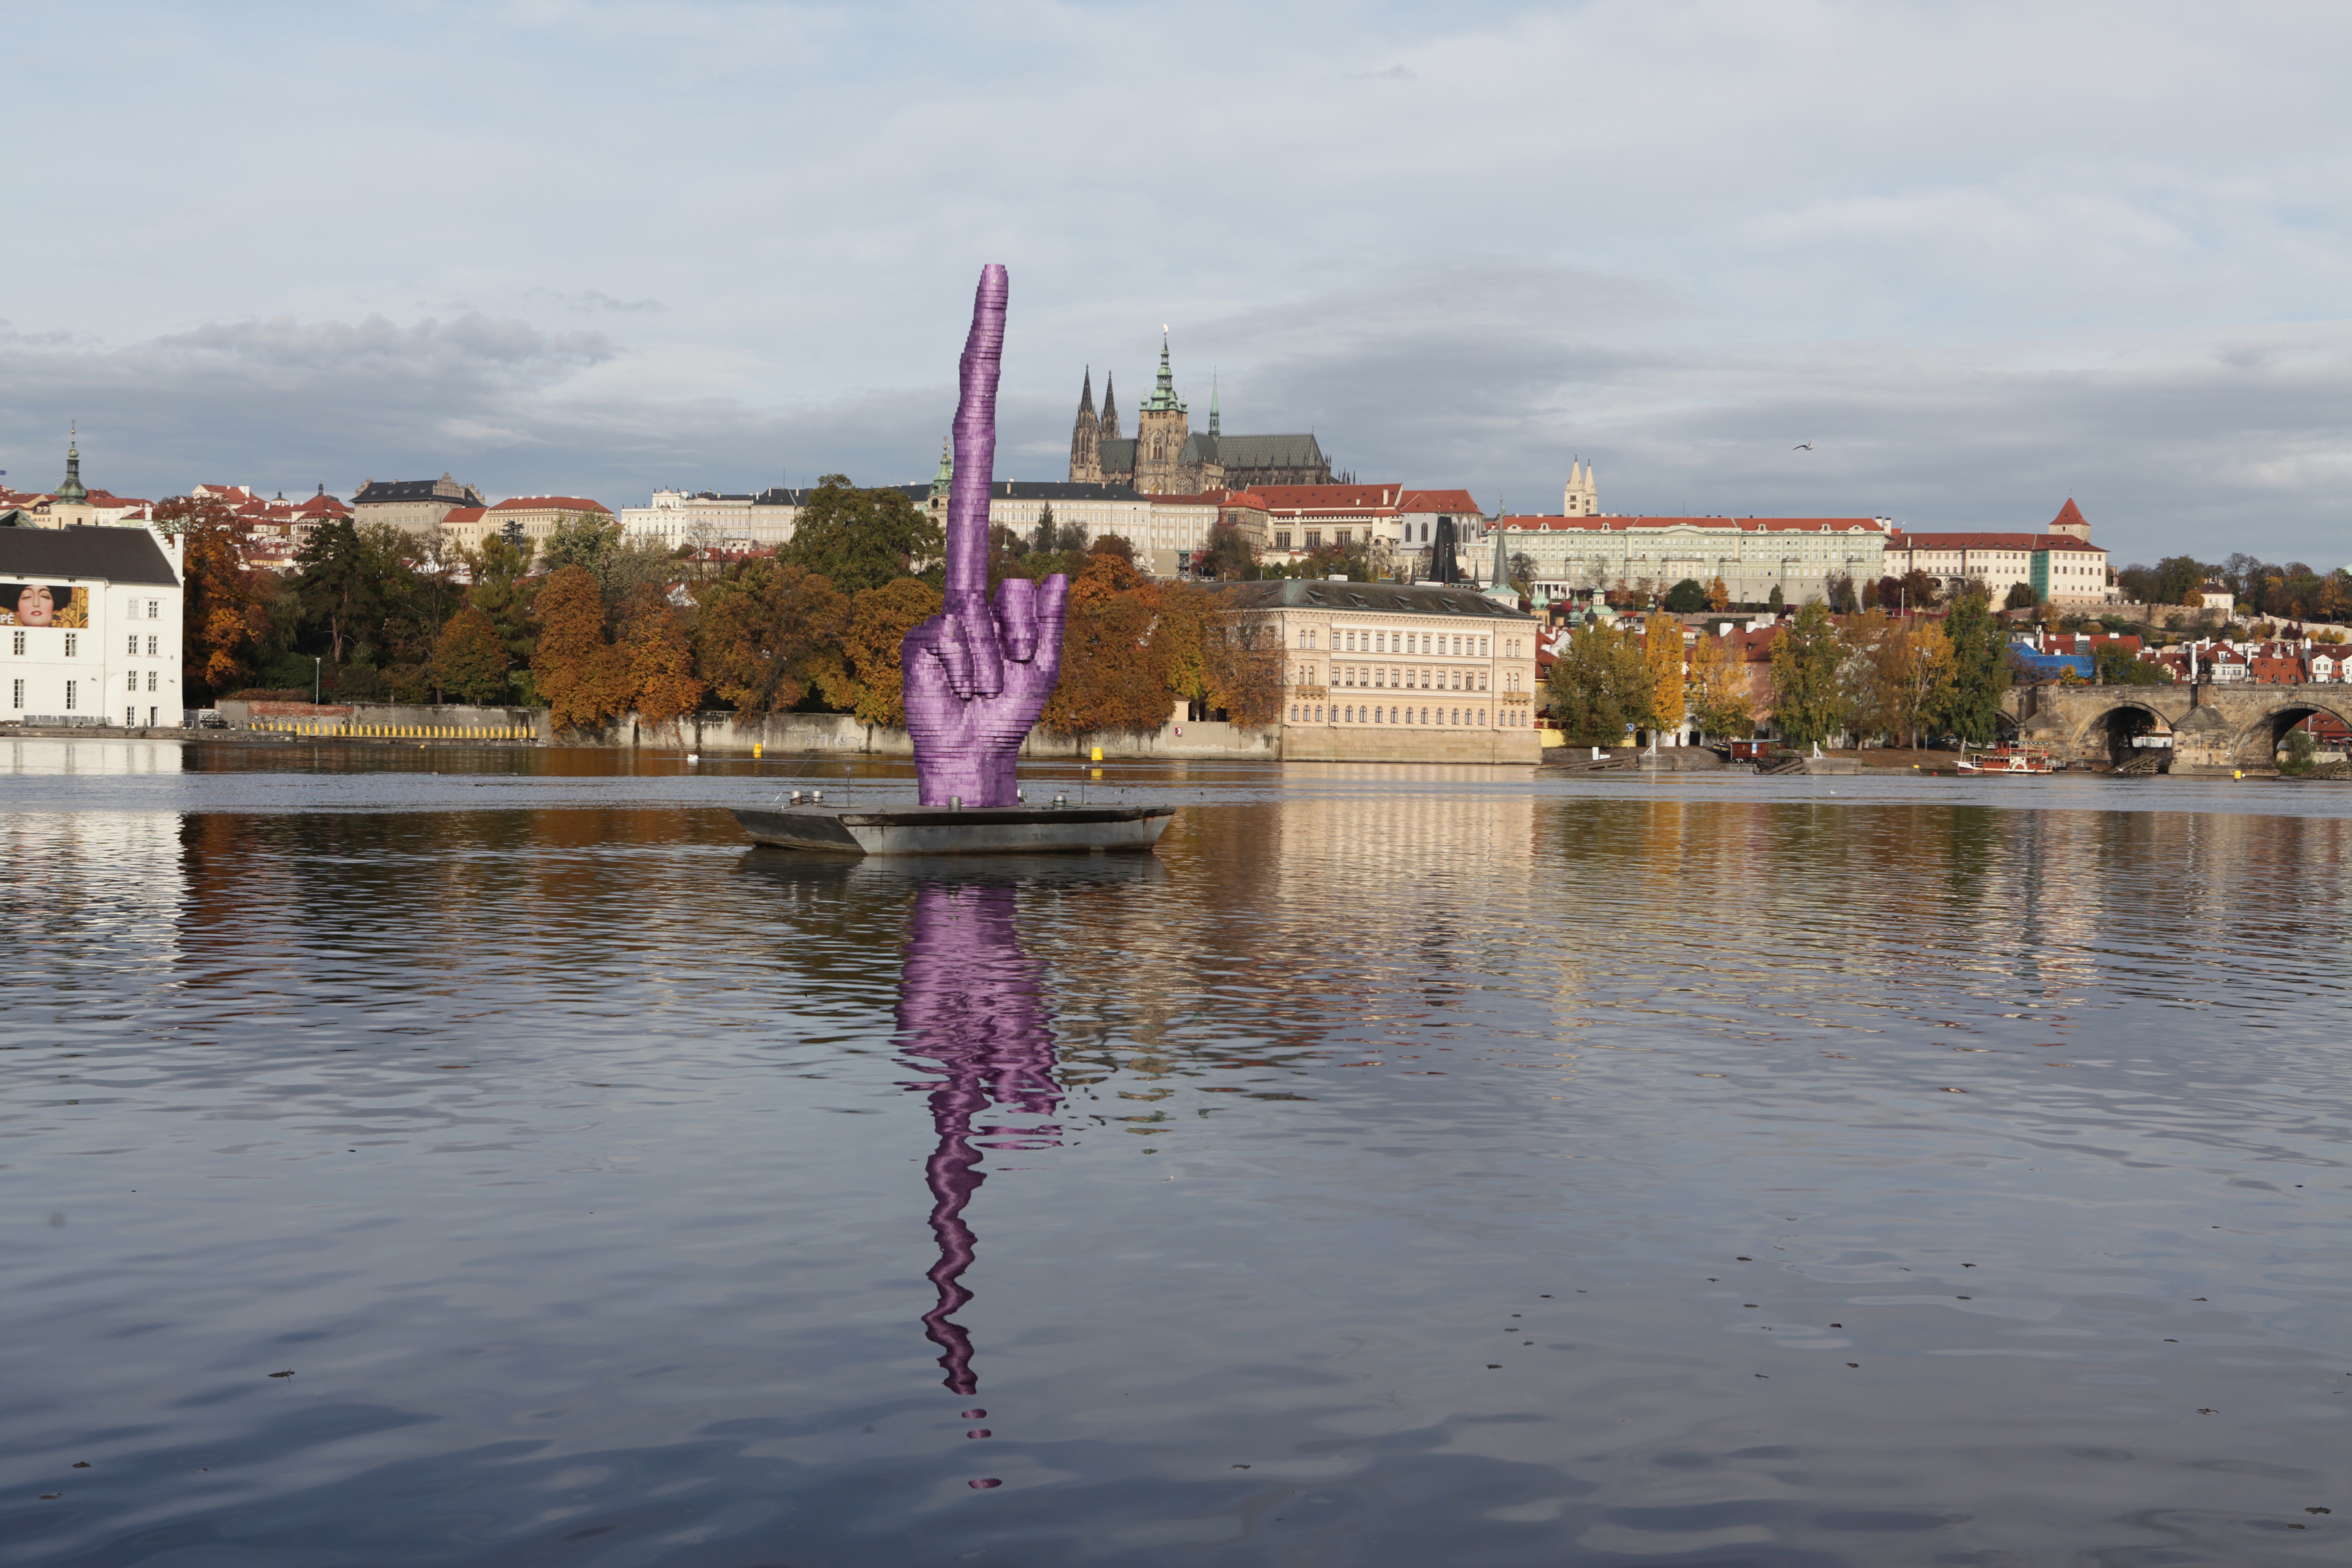 I efteråret 2013 skabte den tjekkiske kunstner David Cerny en kæmpemæssig fuck finger, som peger mod slottet, hvor den tjekkiske præsident bor. Det skete i protest mod præsidentens kontroversielle udtalelser.  Foto: David Cerny